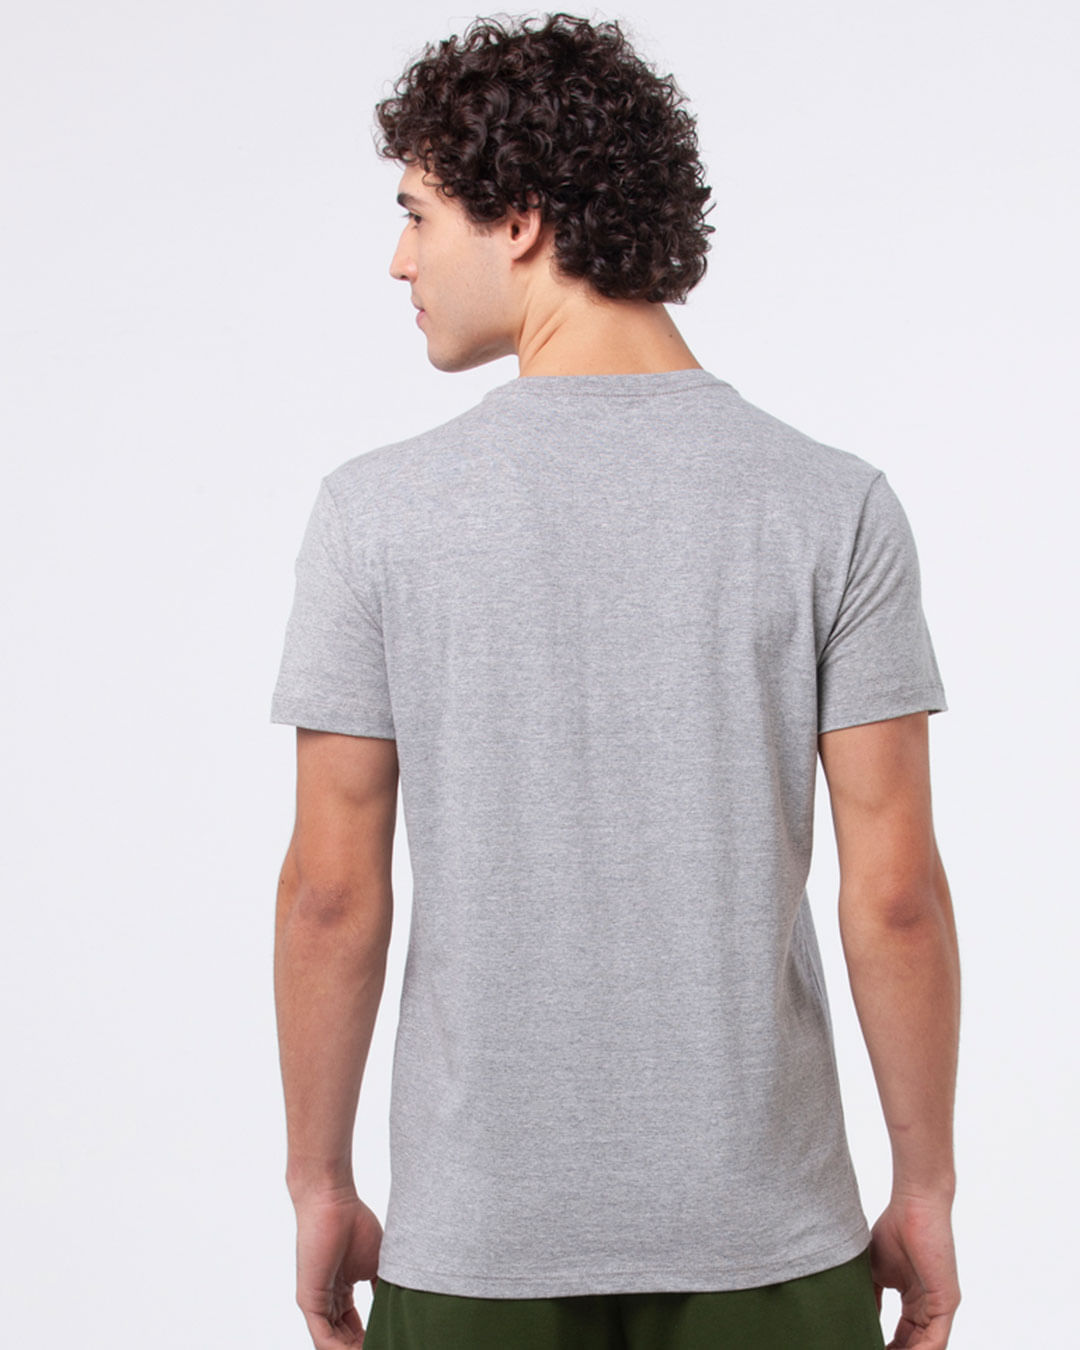 Camiseta-Masculina-Regular-Estampa-Colegial-Cinza